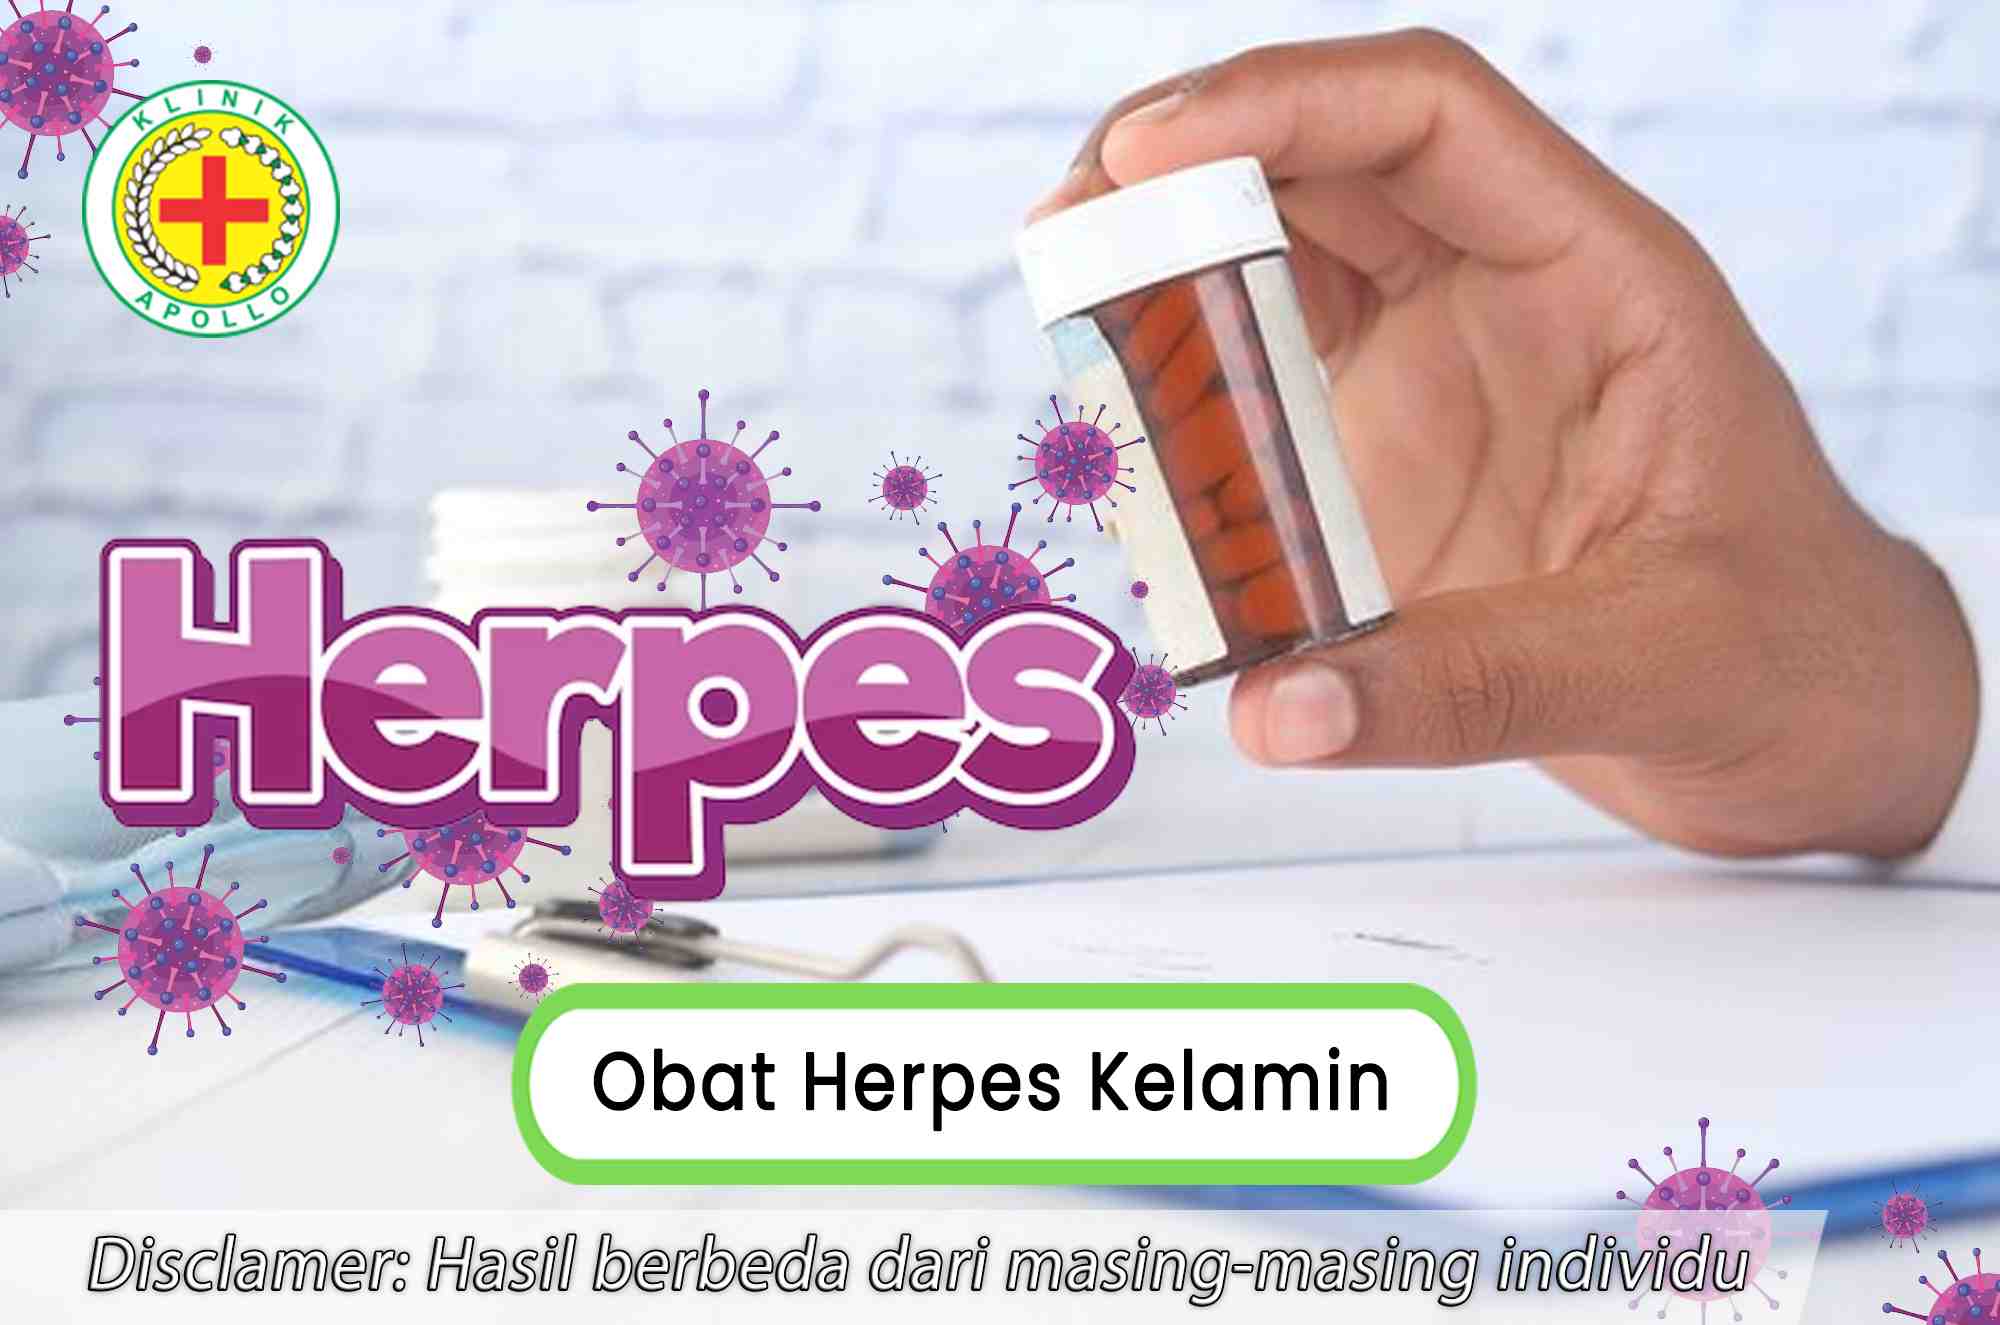 Dokter ahli dapat merekomendasikan obat herpes kelamin setelah melakukan pemeriksaan.